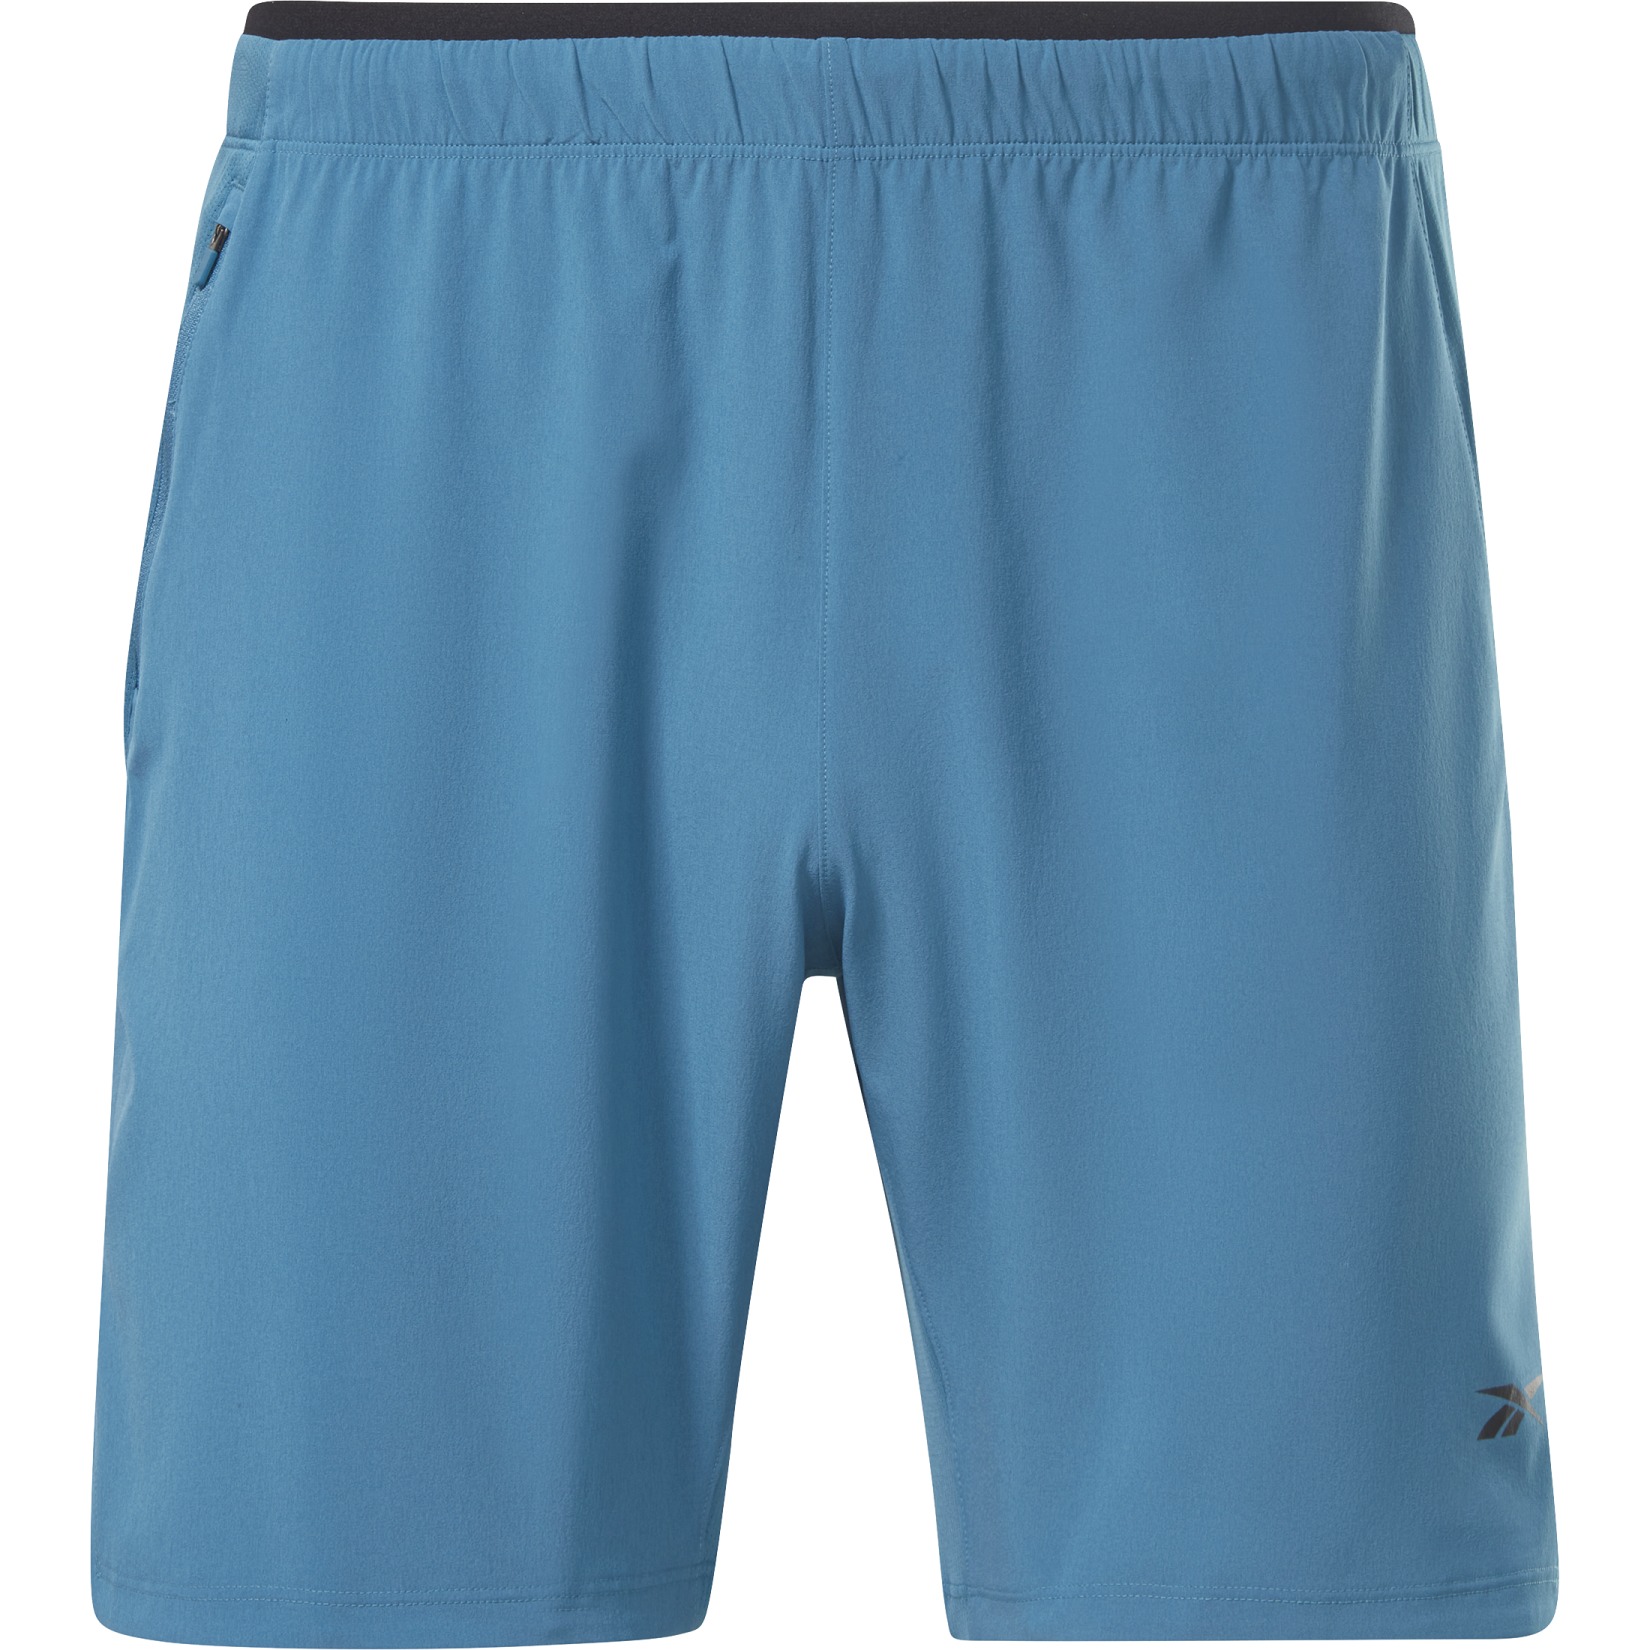 Produktbild von Reebok Strength 3.0 Shorts - steely blue